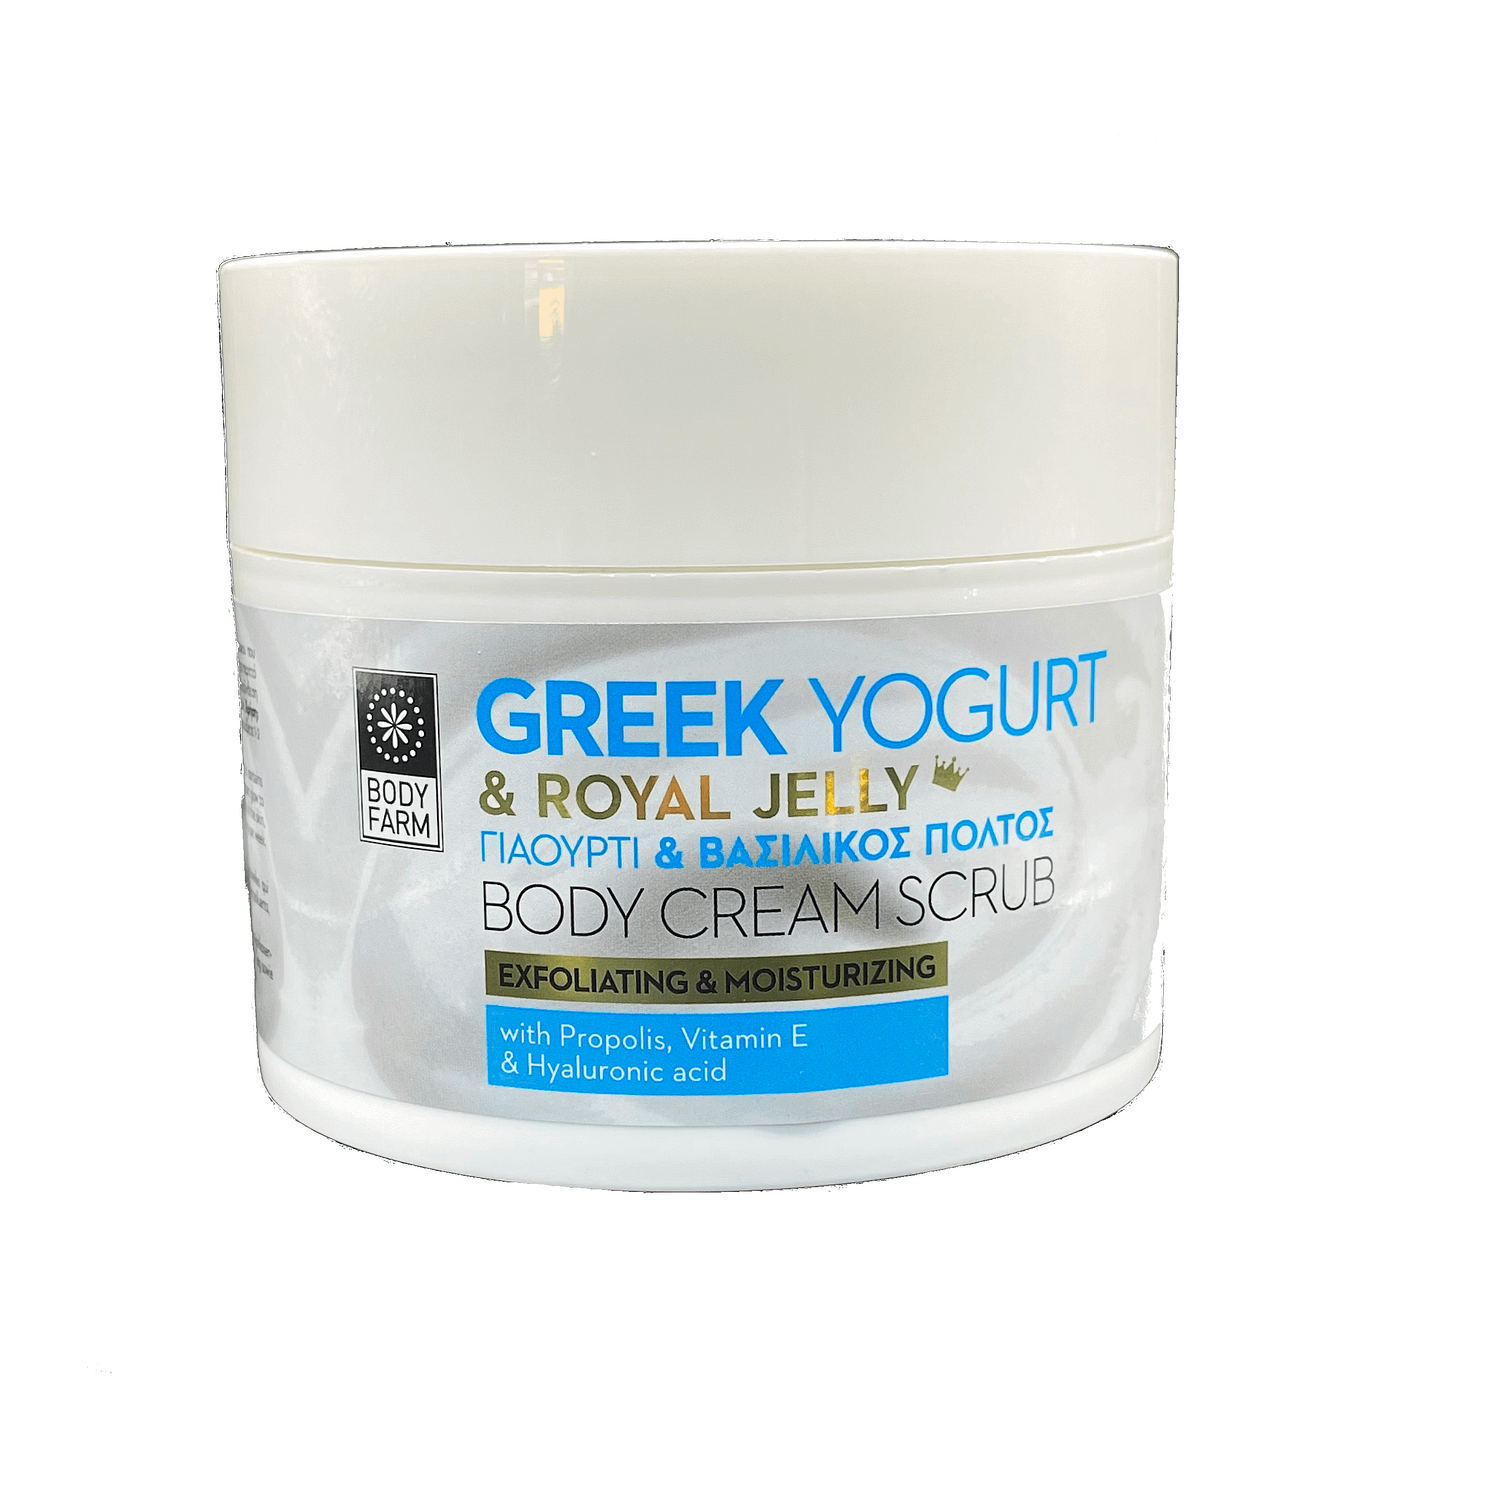 Bodyscrub Greek yogurt